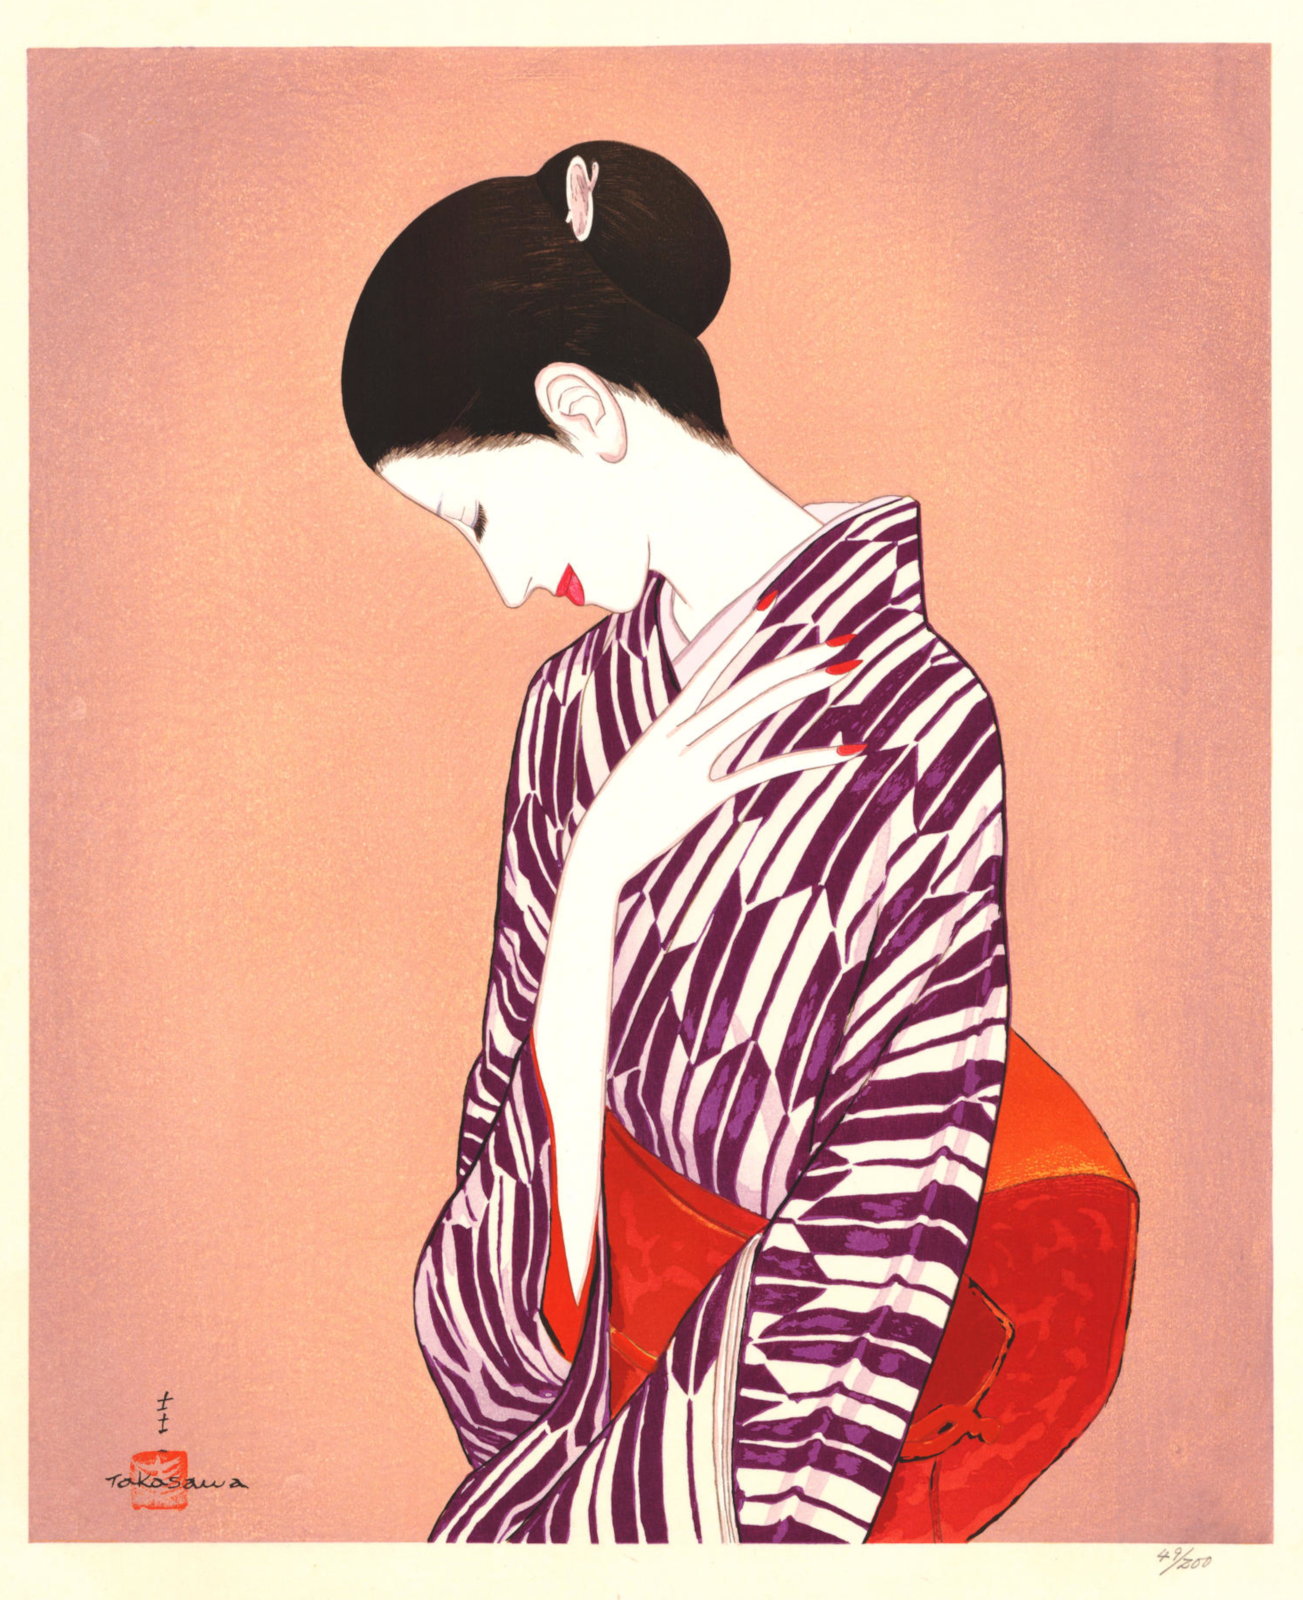 Takasawa Keiichi “Yagasuri Pattern” 1980 woodblock print